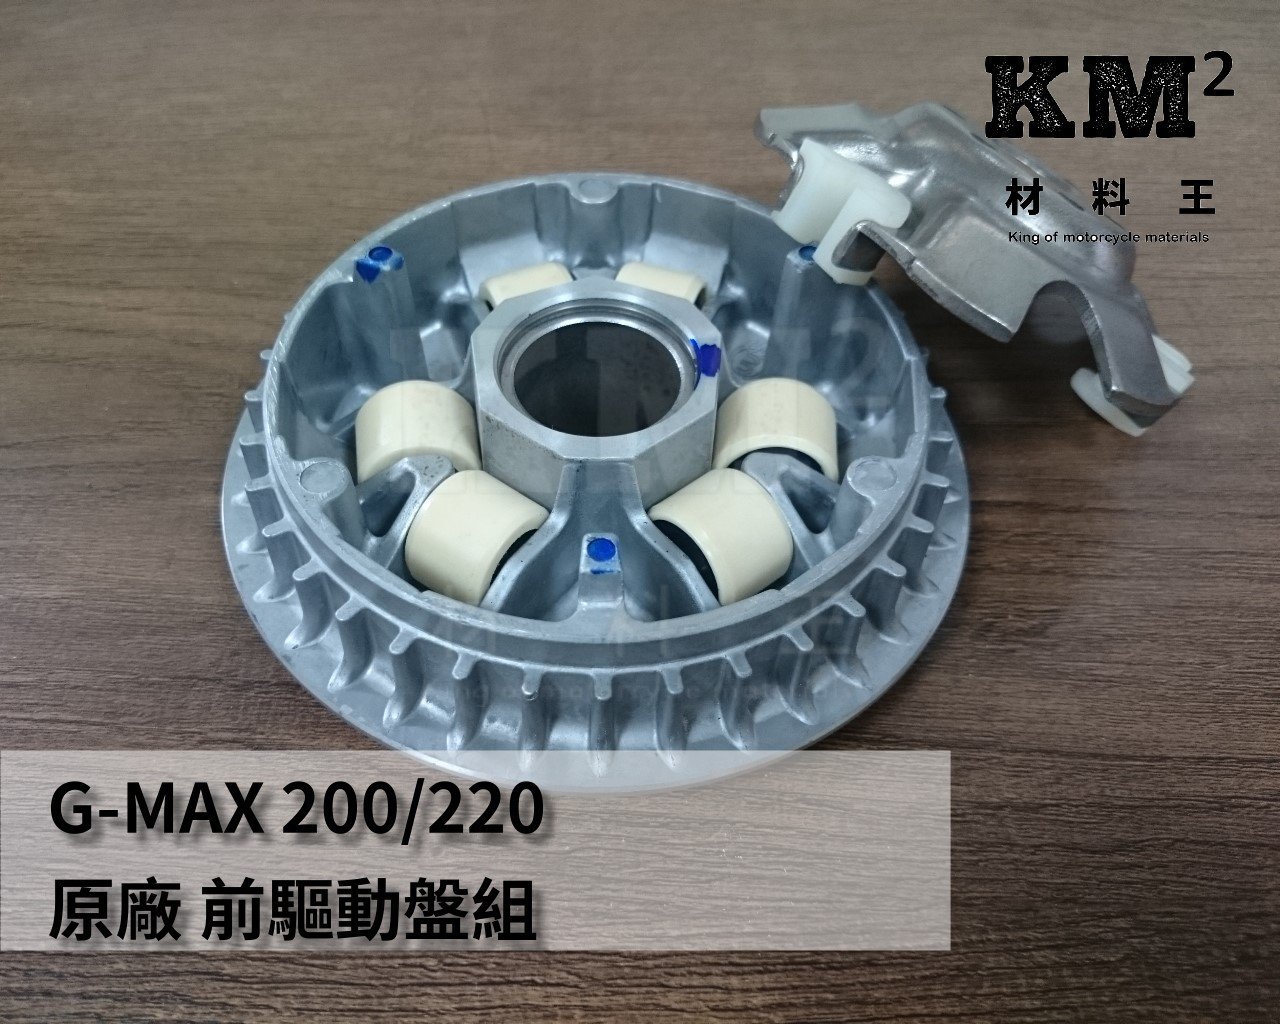 材料王⭐比雅久.PGO G-MAX 200.GMAX220.GMAX 200.220 原廠 前驅動盤組.普利盤